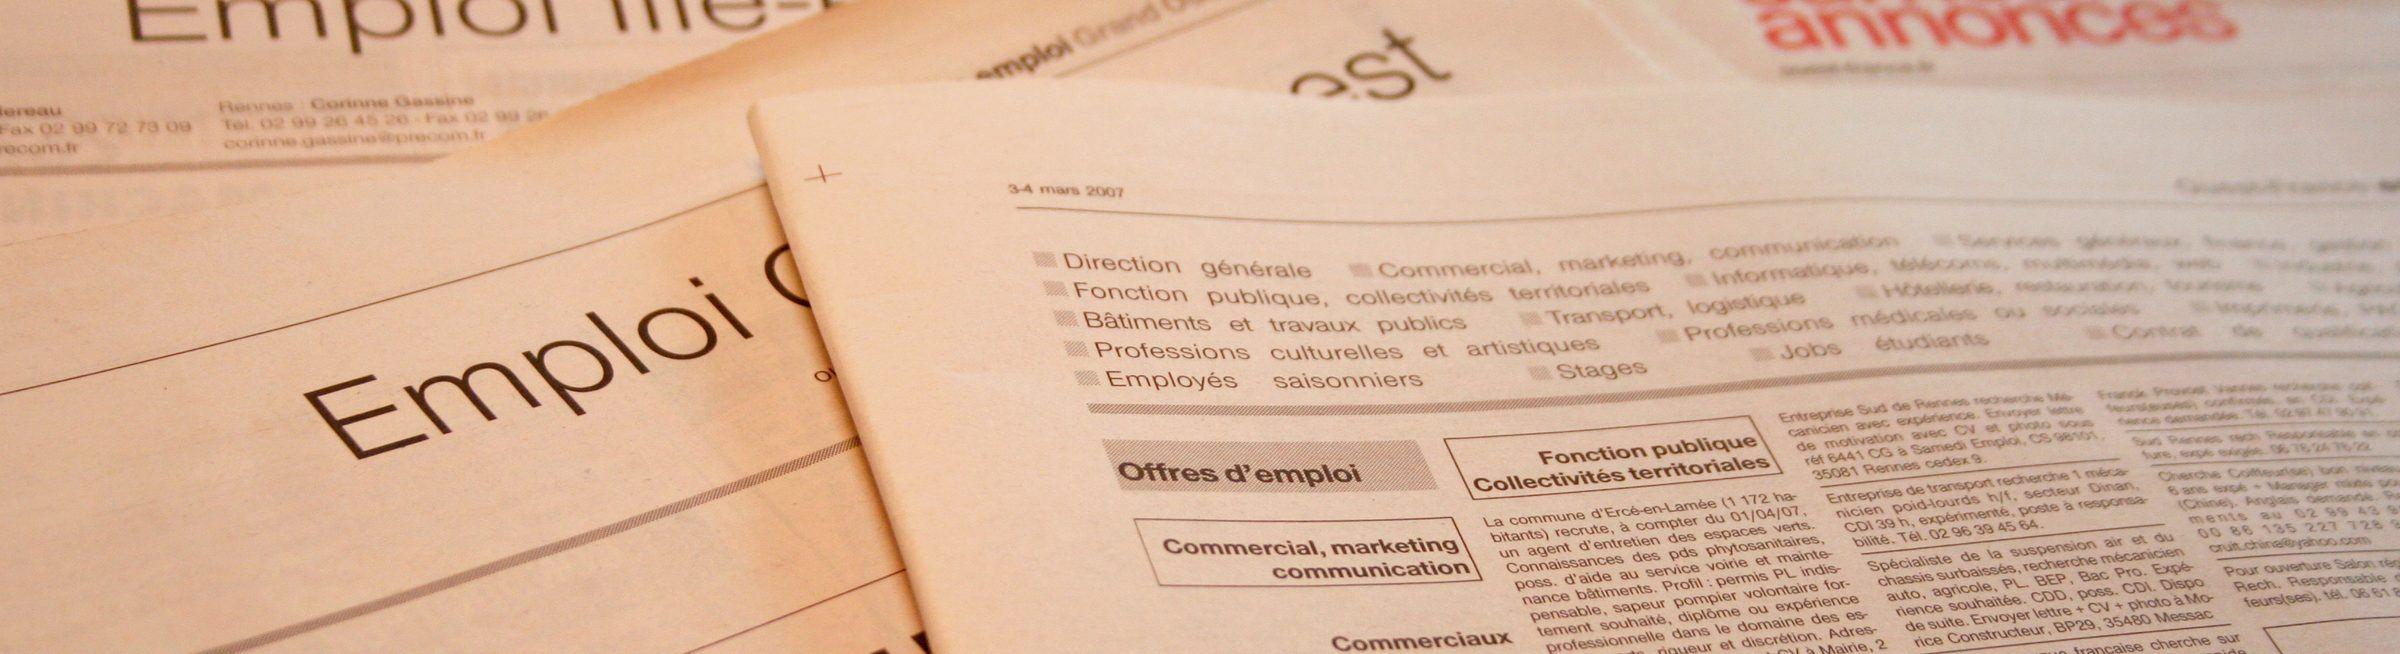 Des offres d'emploi dans des journaux de Charente-Maritime